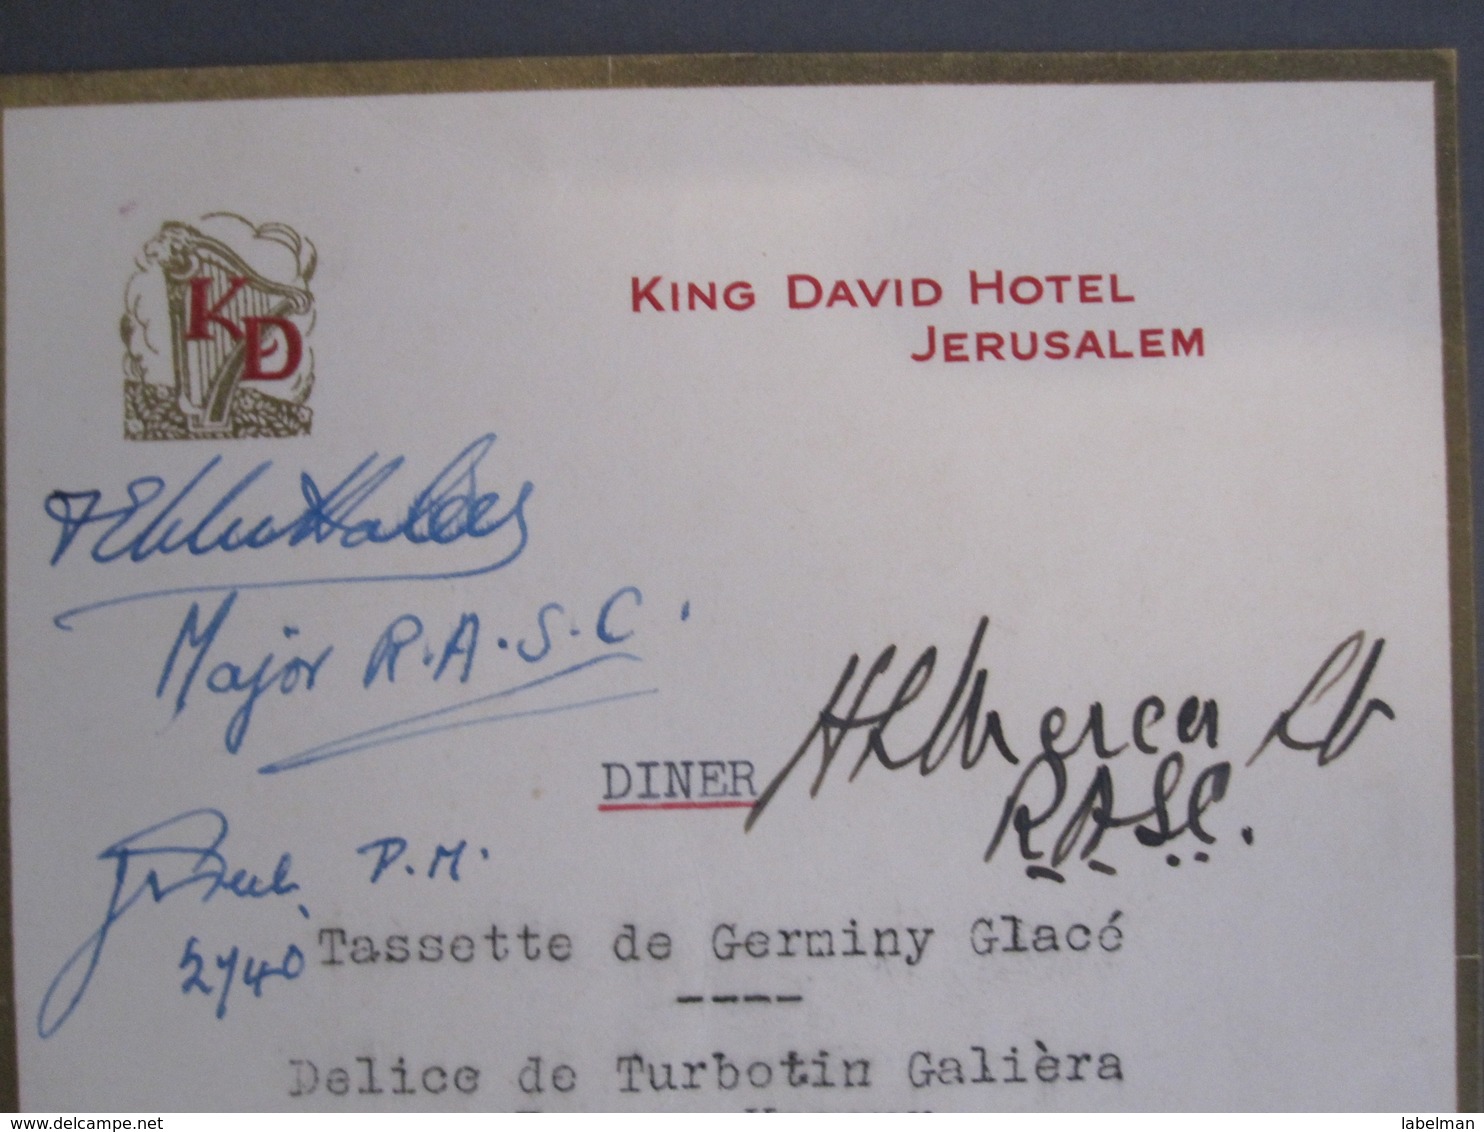 ISRAEL PALESTINE HOTEL KING DAVID RESTAURANT MENU 1940 JERUSALEM VINTAGE ADVERTISING DESIGN ORIGINAL - Etiquettes D'hotels